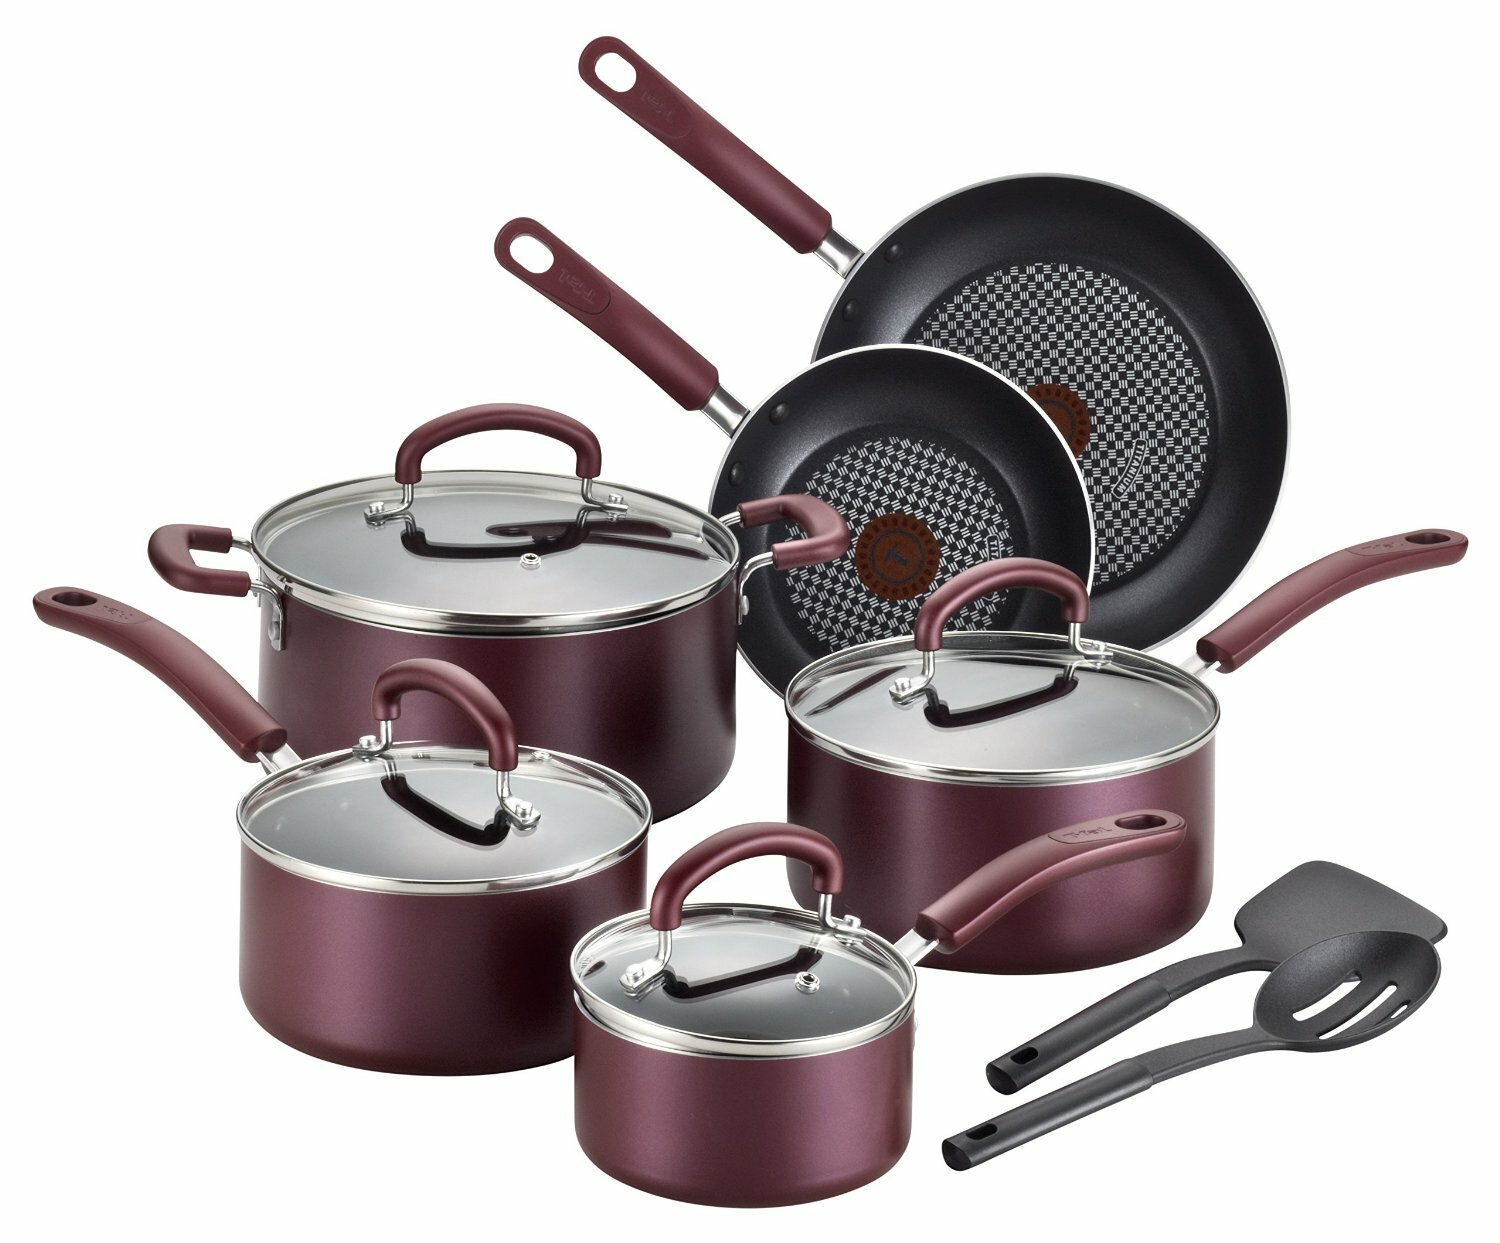 https://assets.wfcdn.com/im/35417387/compr-r85/4464/44646438/t-fal-luxe-nonstick-cookware-set-cooking-utensils-12-piece.jpg